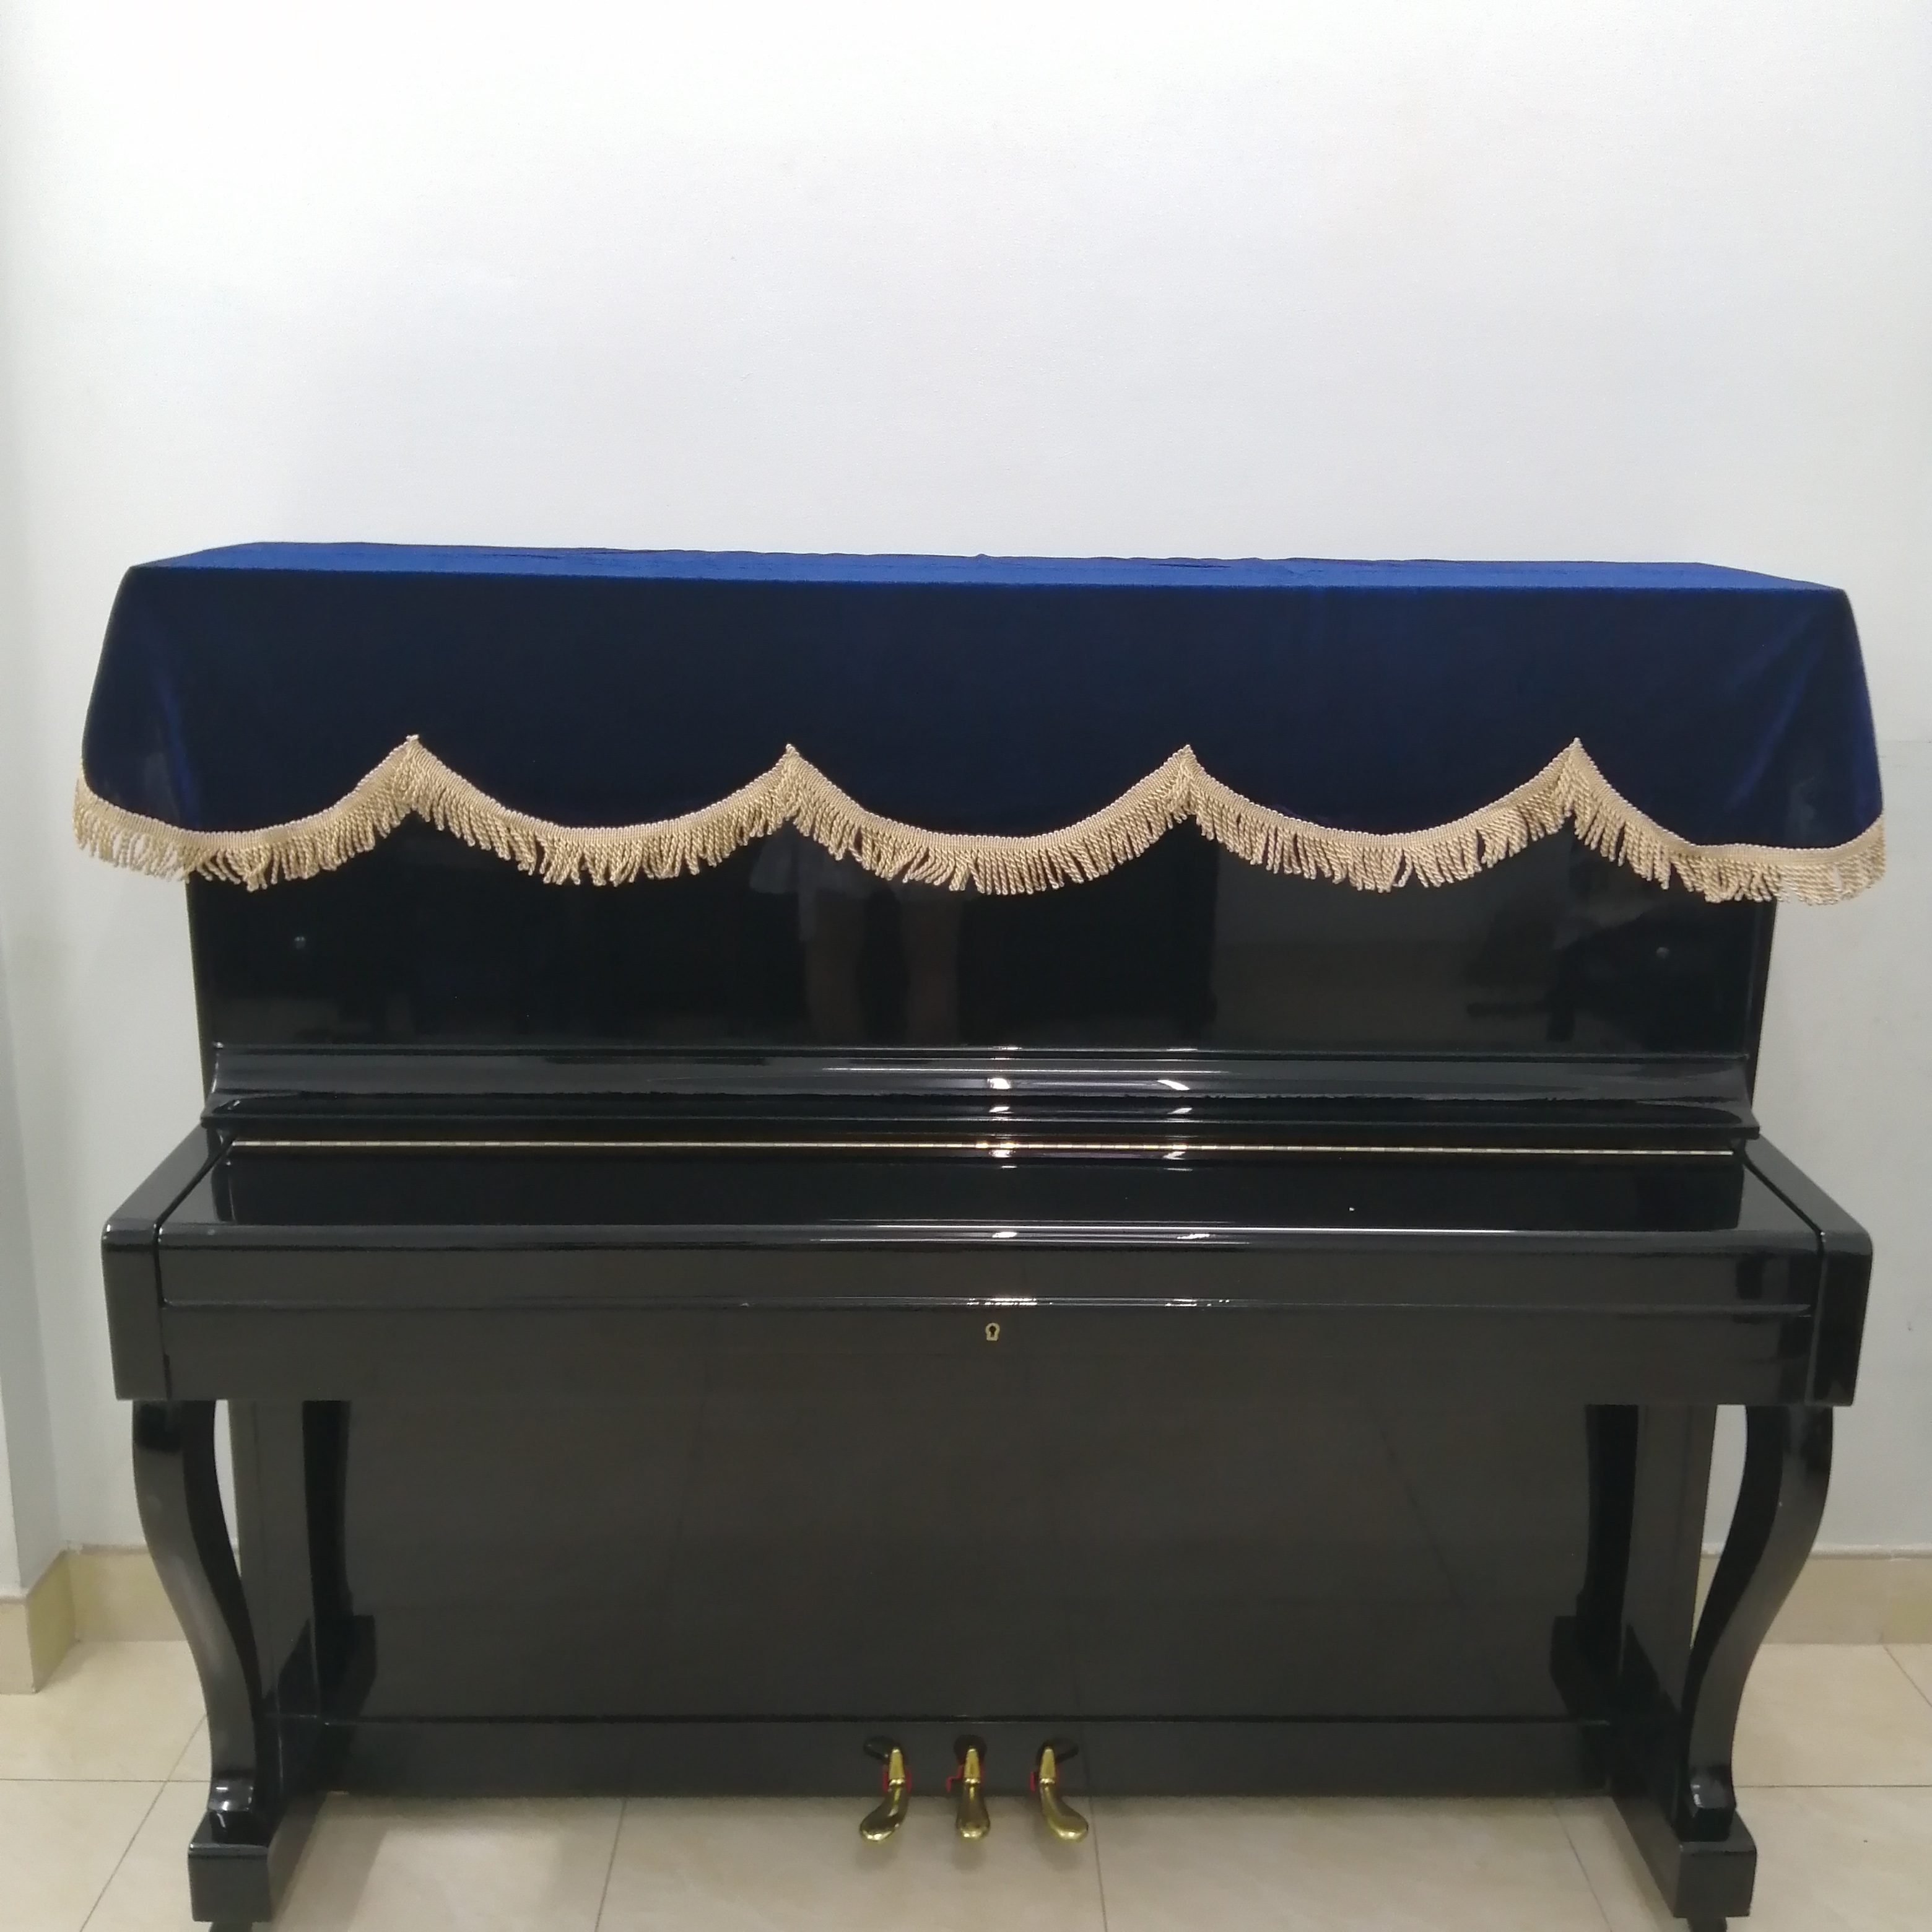 kHĂN TRẢI  PHỦ ĐÀN PIANO CƠ NHUNG DÀY MỀM MỊN MÀU XANH DƯƠNG